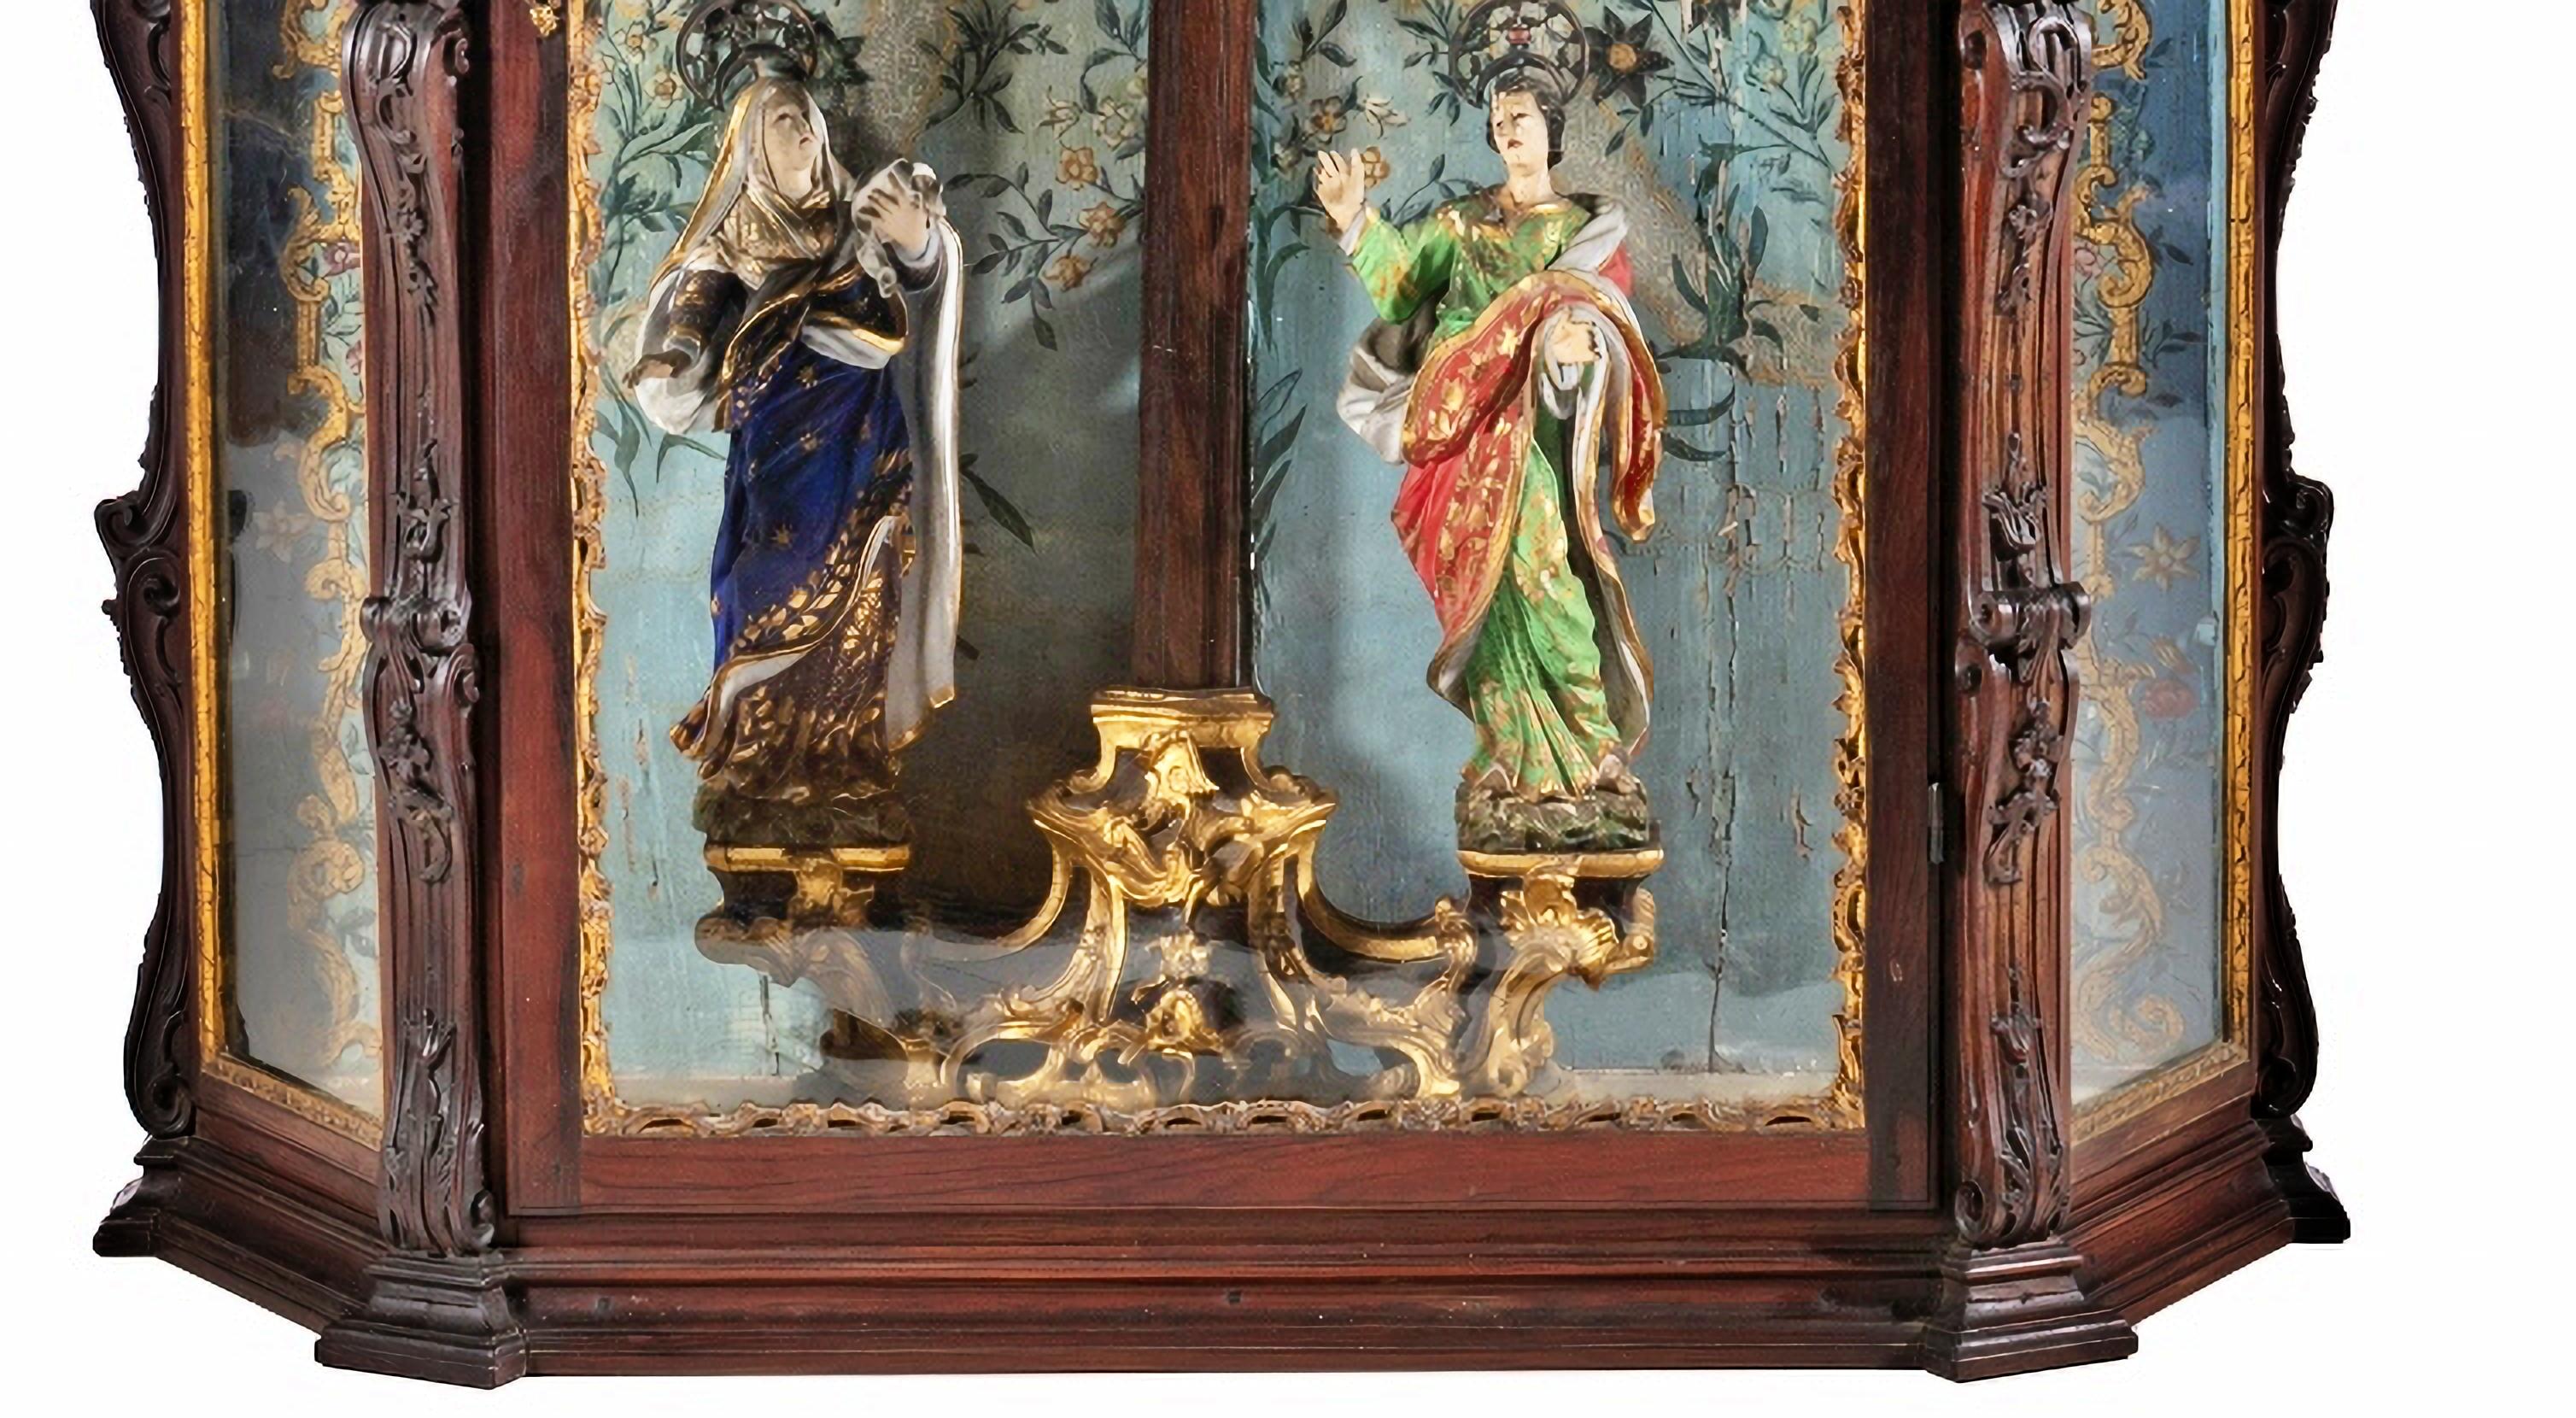 ImportantANT PORTUGUESE ORATORY WITH CALVARY 18. Jahrhundert

Portugiesisch, aus dem 18. Jahrhundert
aus geschnitztem brasilianischem Palisanderholz. 
Dekoration mit unterbrochenen Giebeln, Voluten, floralen Motiven, Pflanzenrollen und Pilastern.